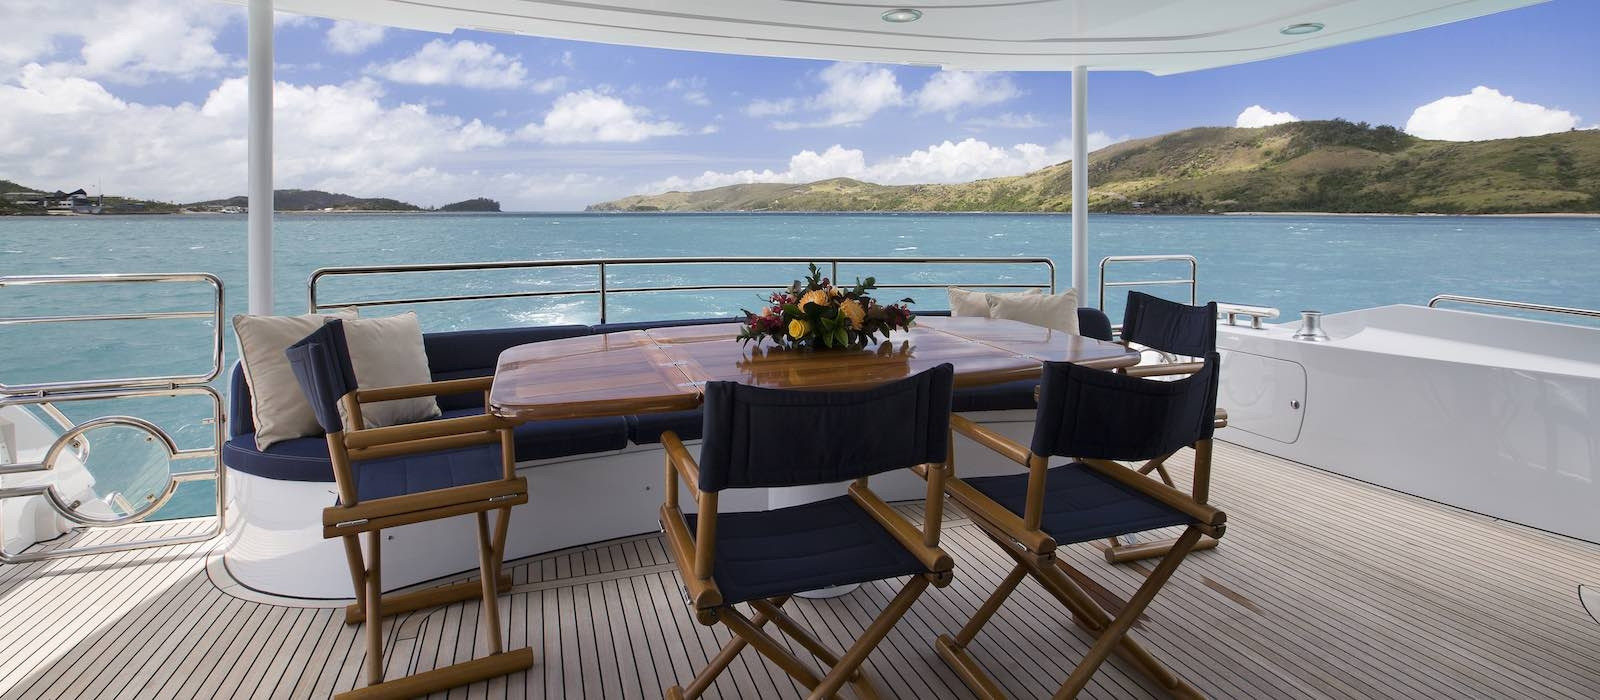 Aft deck on luxury boat hire on Alani